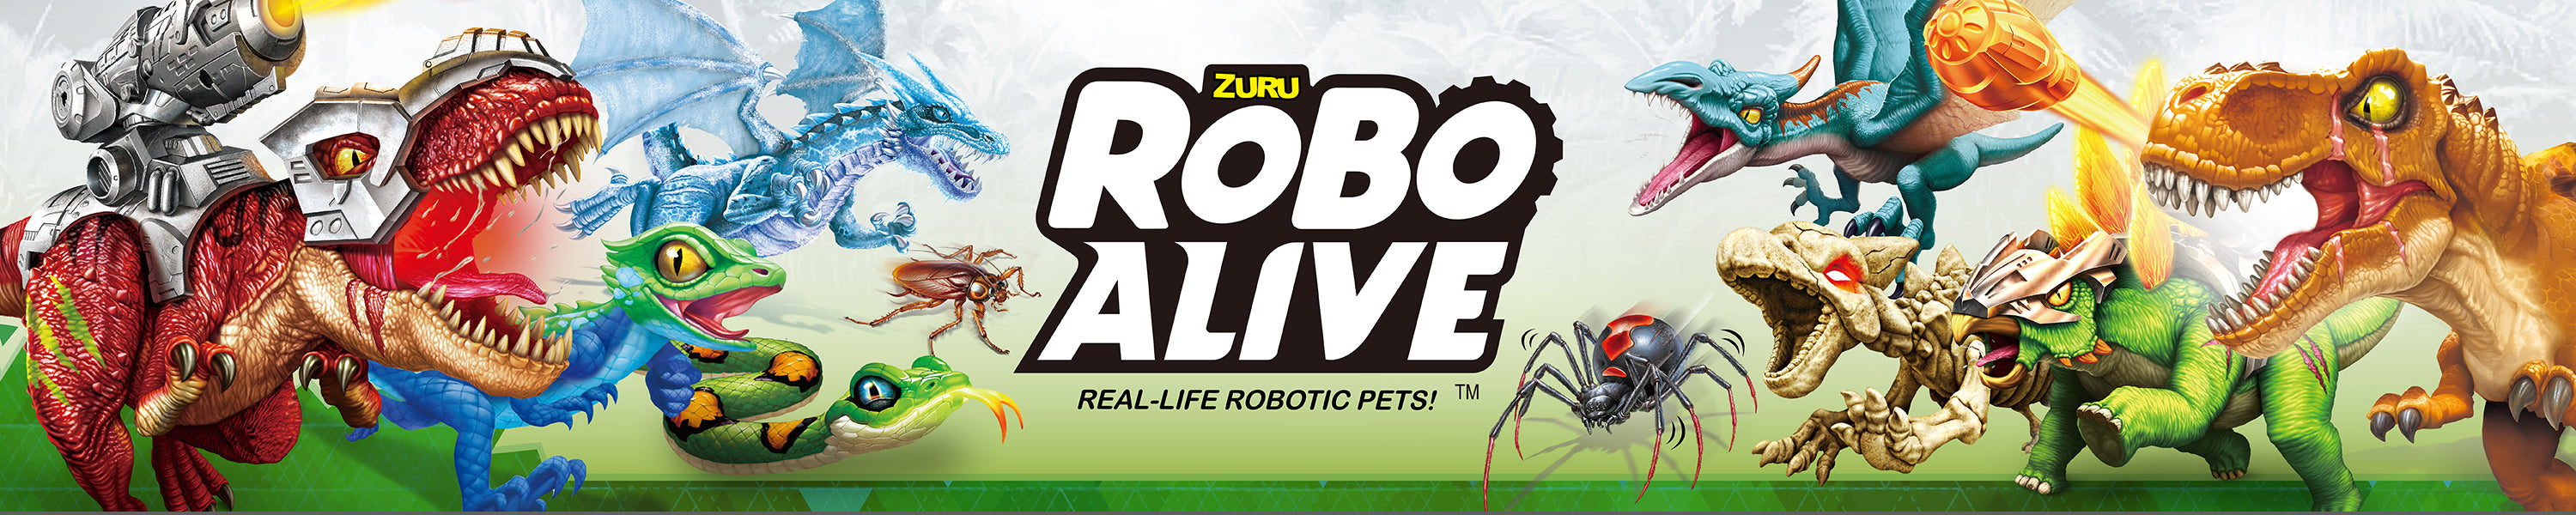 Robo-Alive unicornpunkboishop